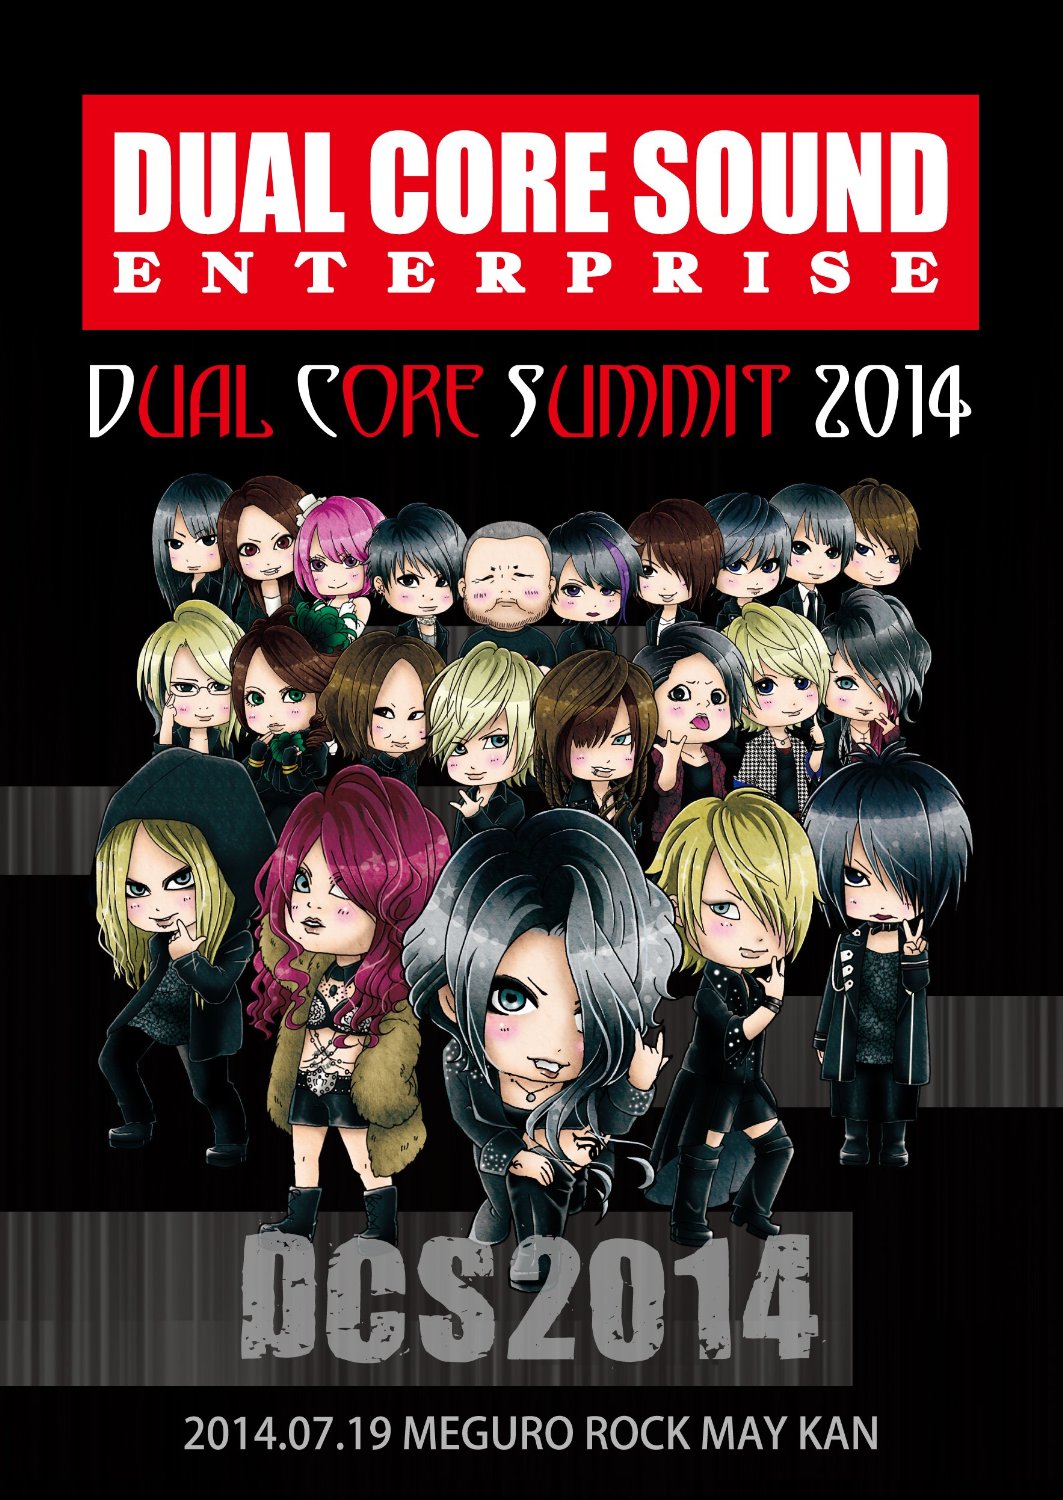 オムニバスタ の DVD DUAL CORE SUMMIT 2014